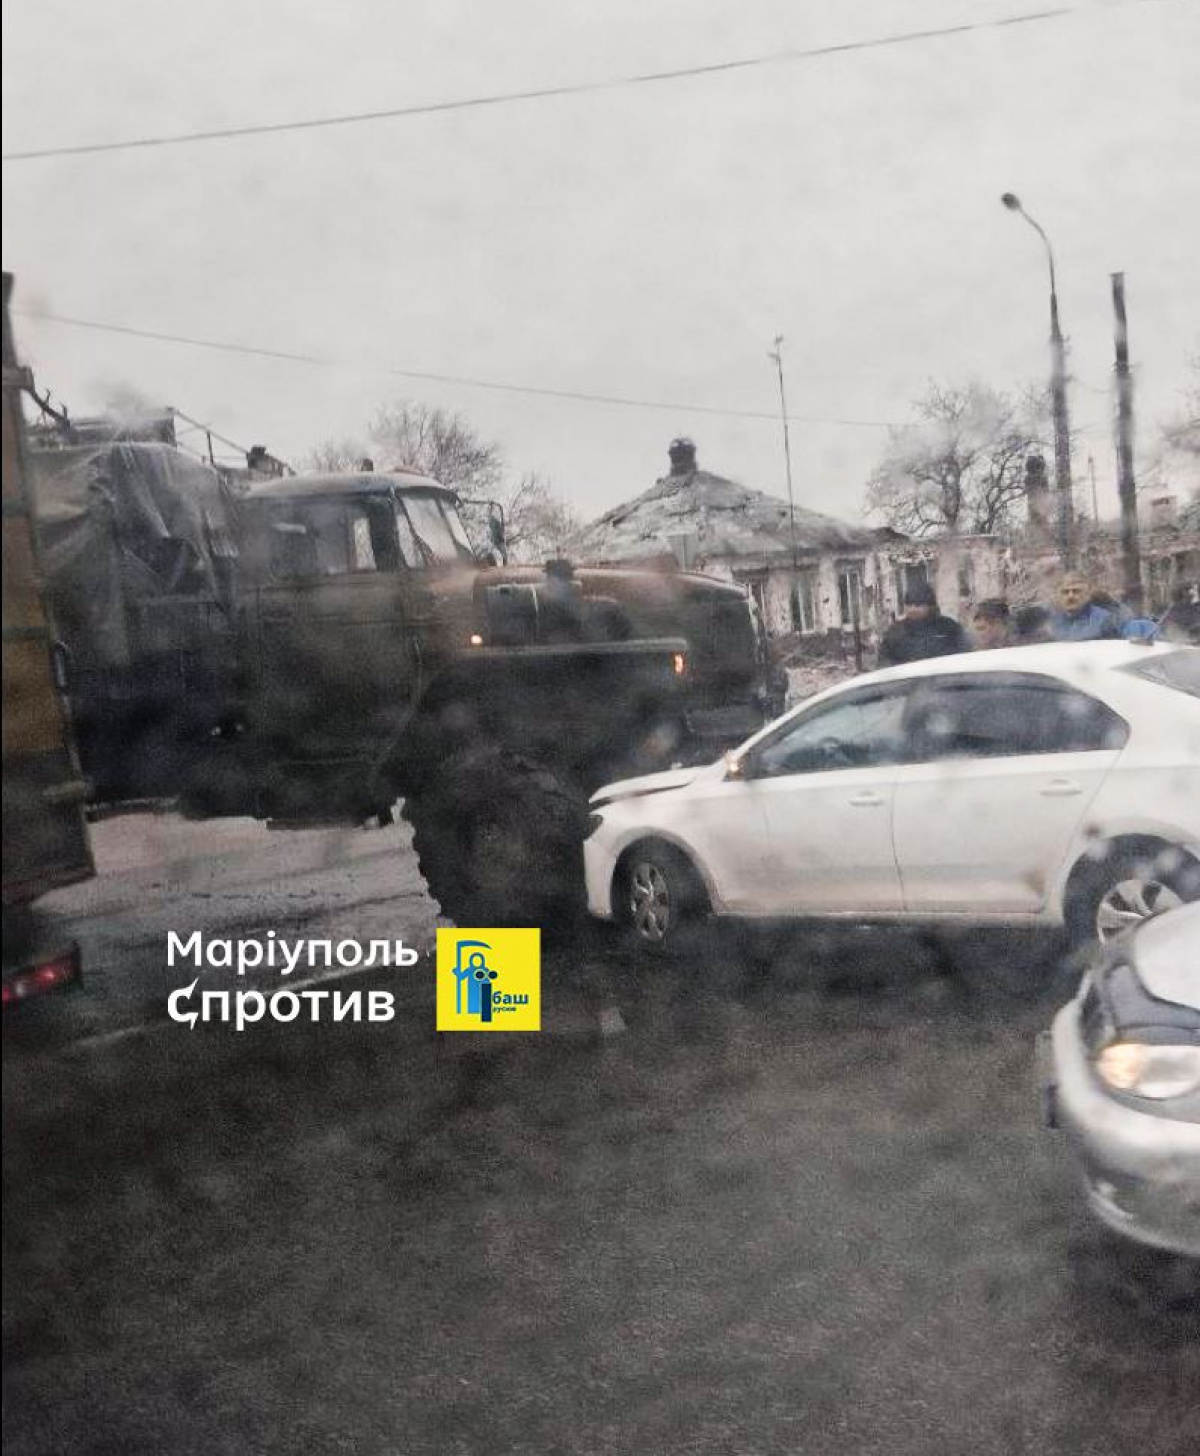 В окупованому Маріуполі вантажівка з боєкомплектом врізалася в легковий автомобіль. Фото: Петро Андрющенко/Телеграм